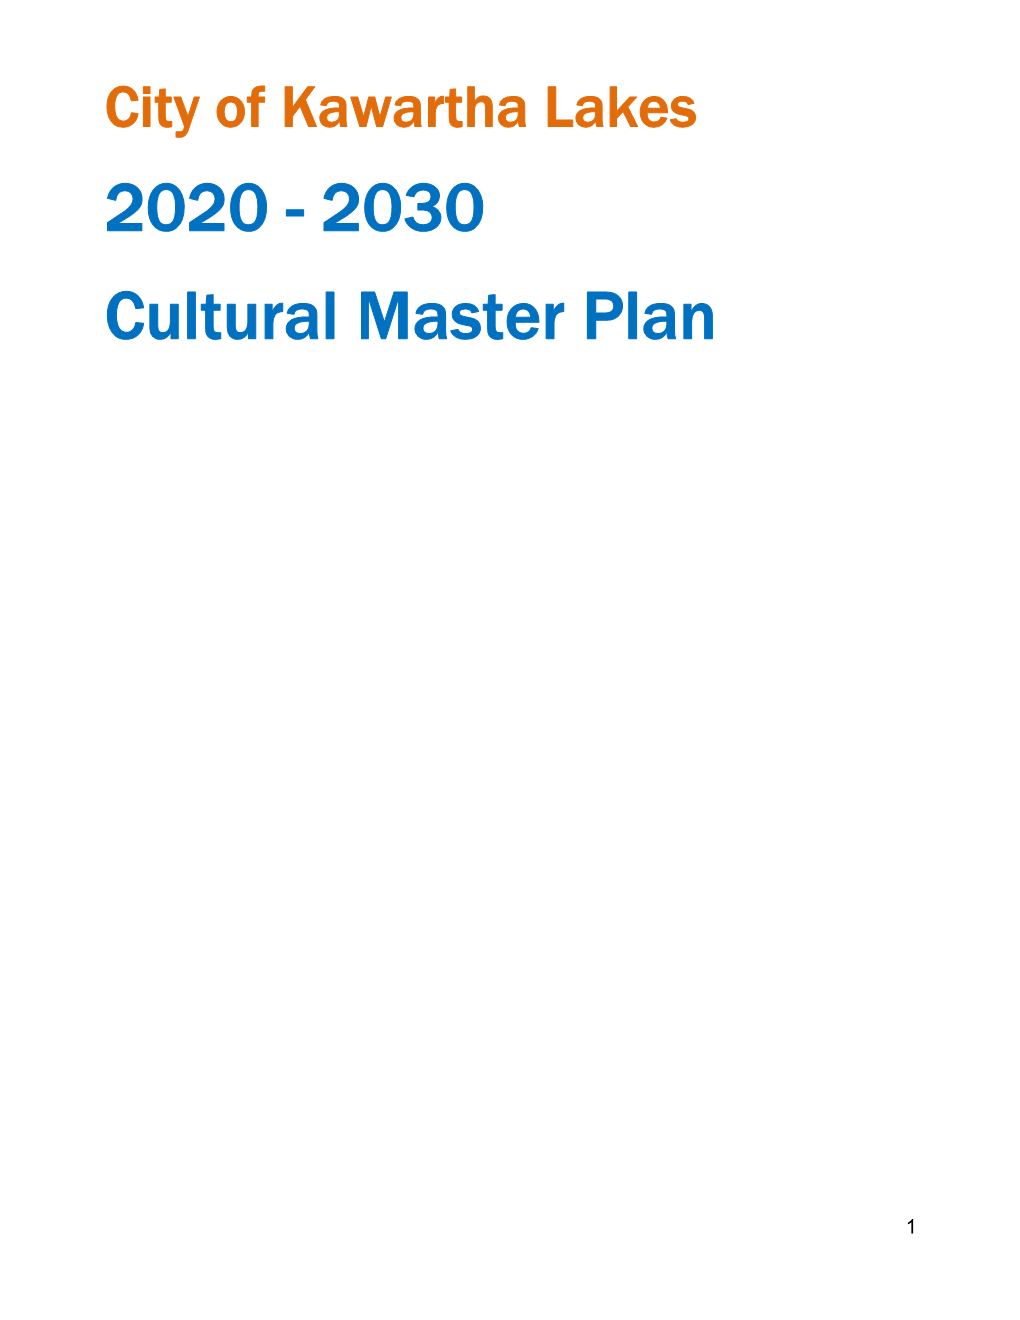 City of Kawartha Lakes 2020 - 2030 Cultural Master Plan